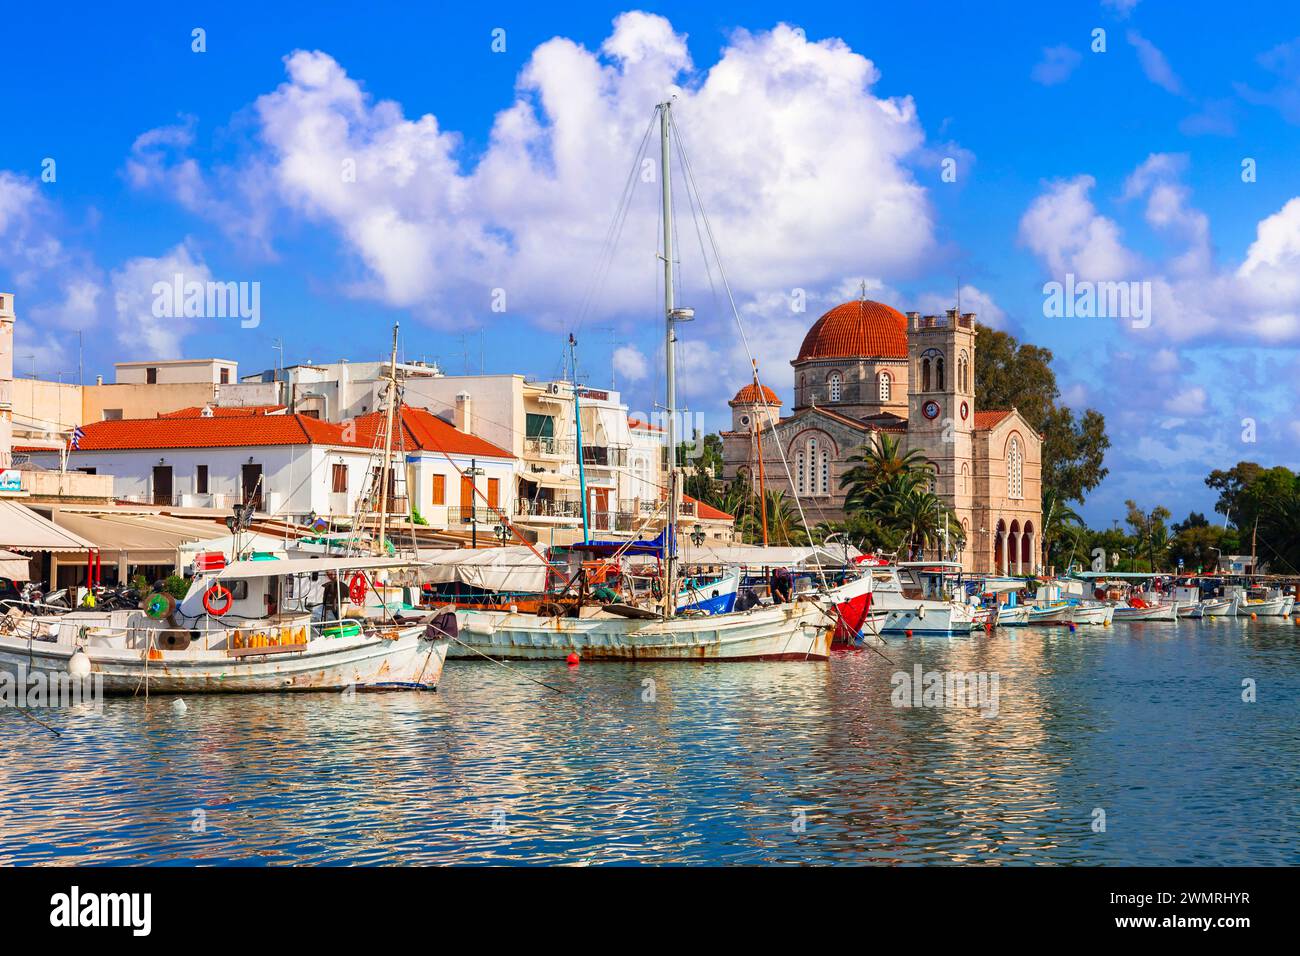 Saronische Inseln Griechenlands. Authentische schöne griechische Insel - Ägina mit traditionellen Fischerbooten und St. Nikolaikirche Stockfoto